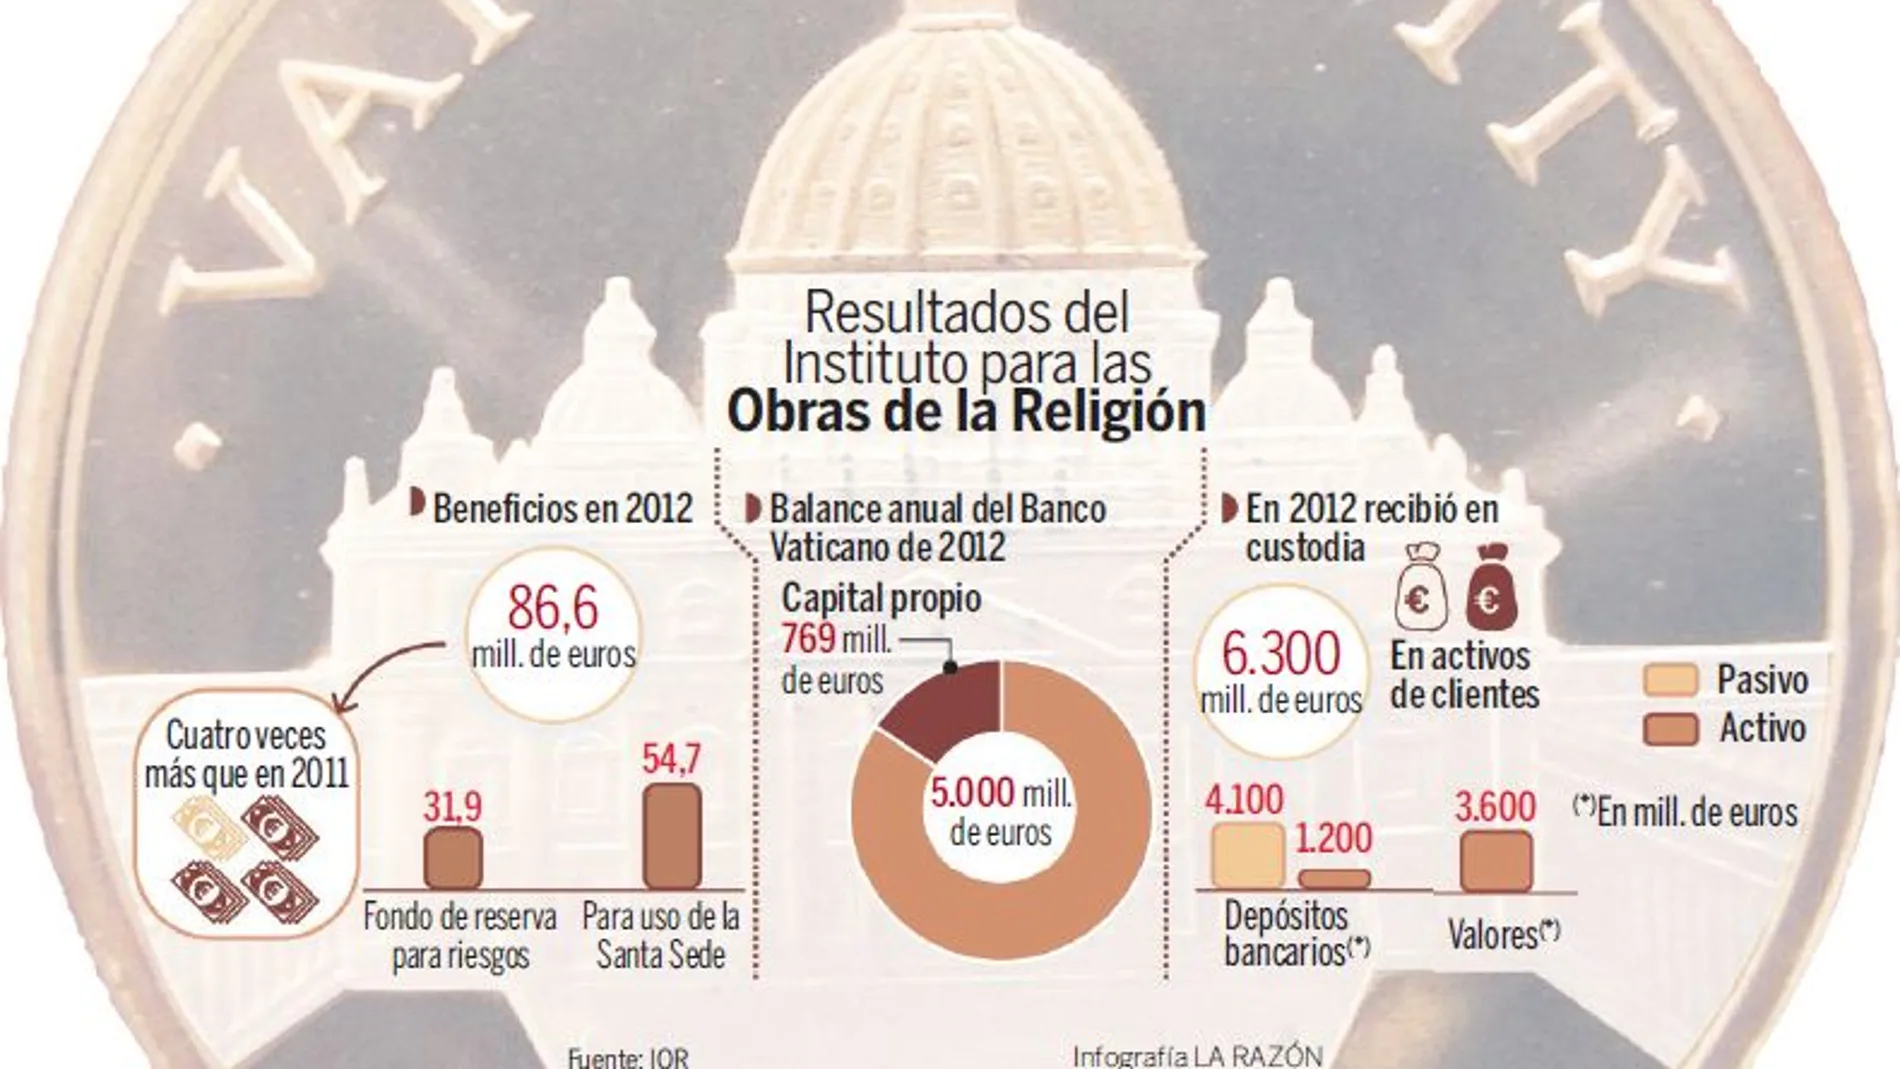 El Banco Vaticano cuenta con un patrimonio de 769 millones de euros